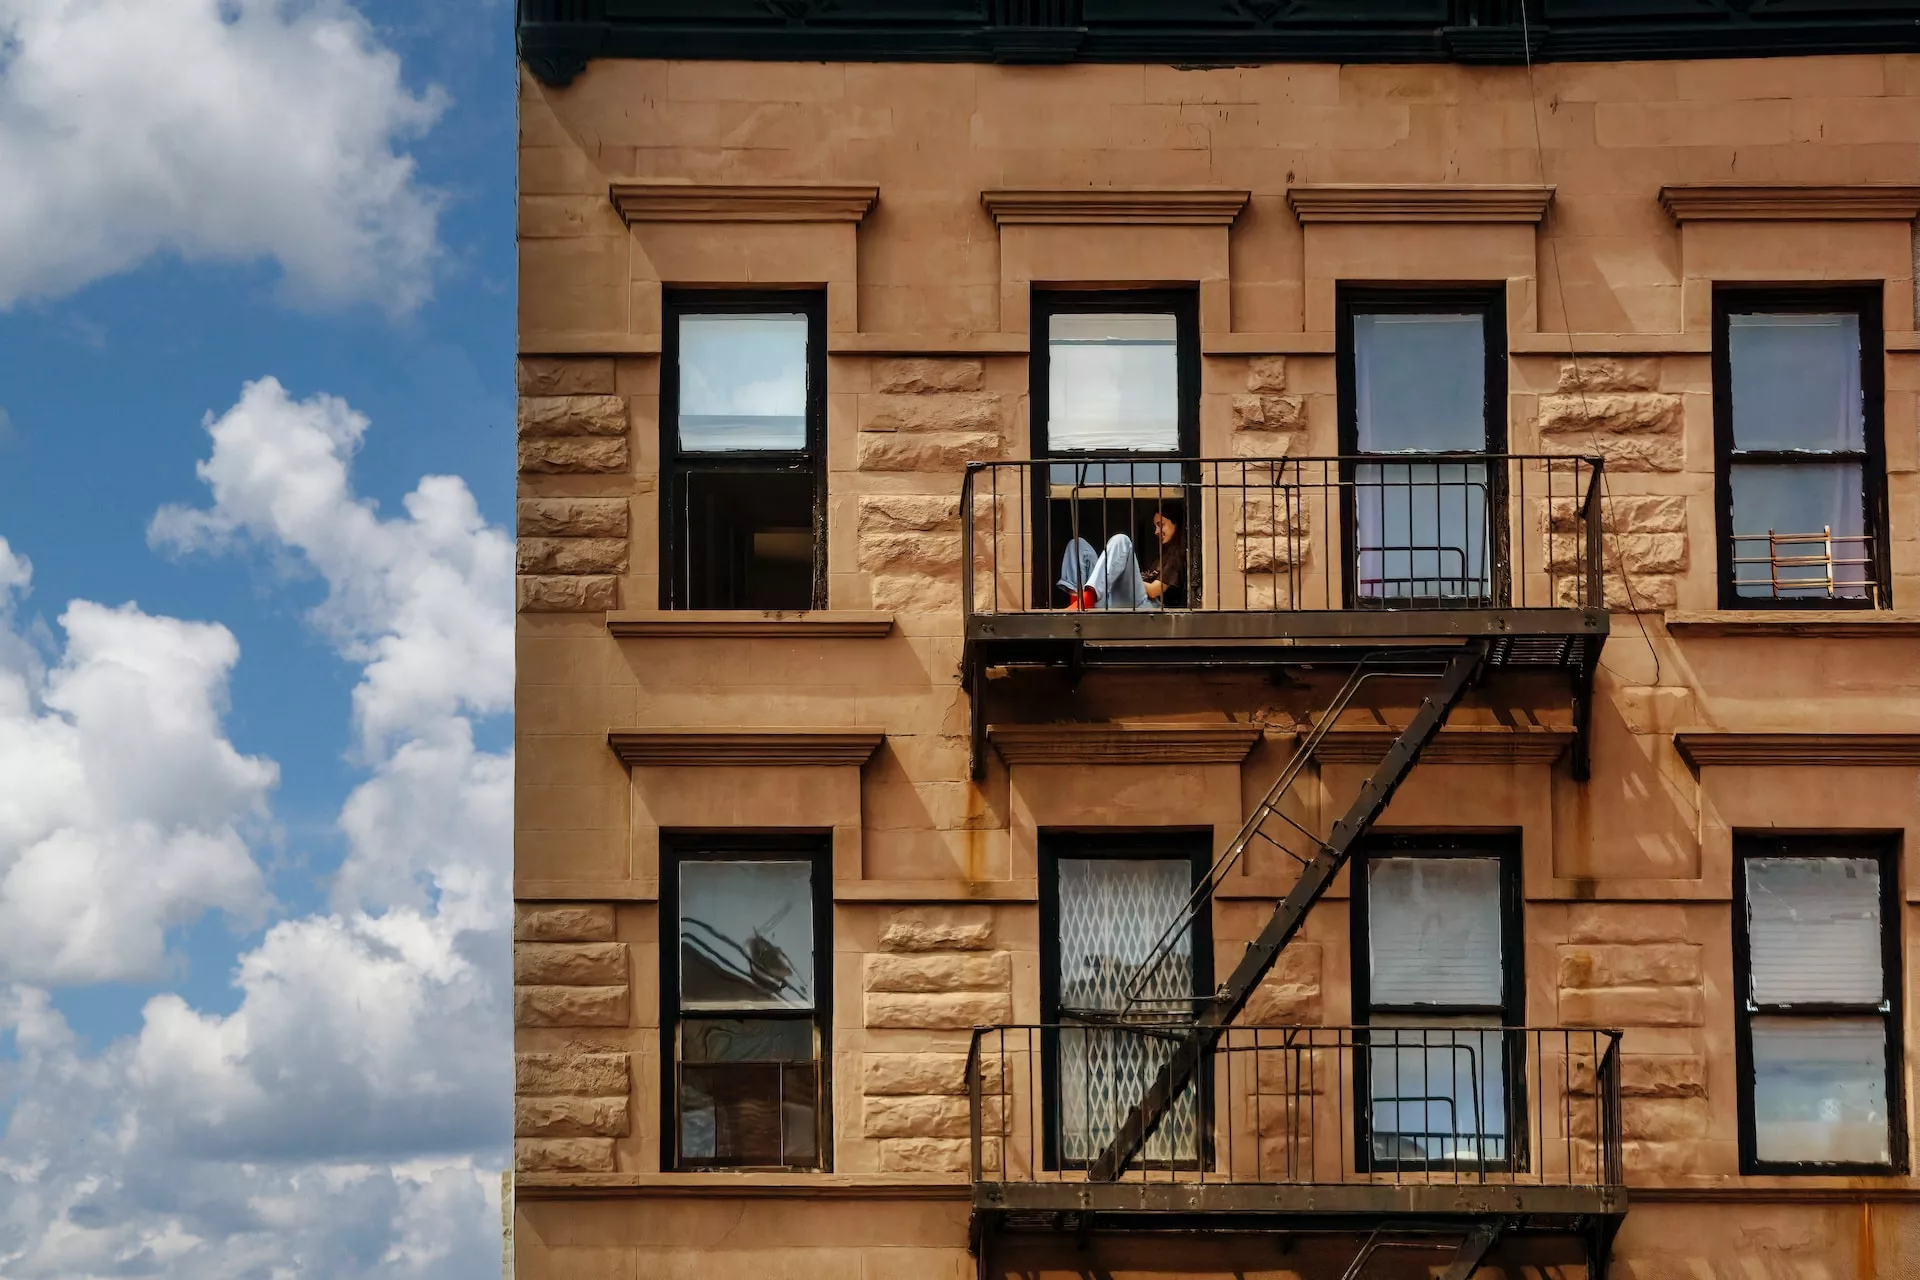 Next Stop, Manhattan: Your Moving Checklist